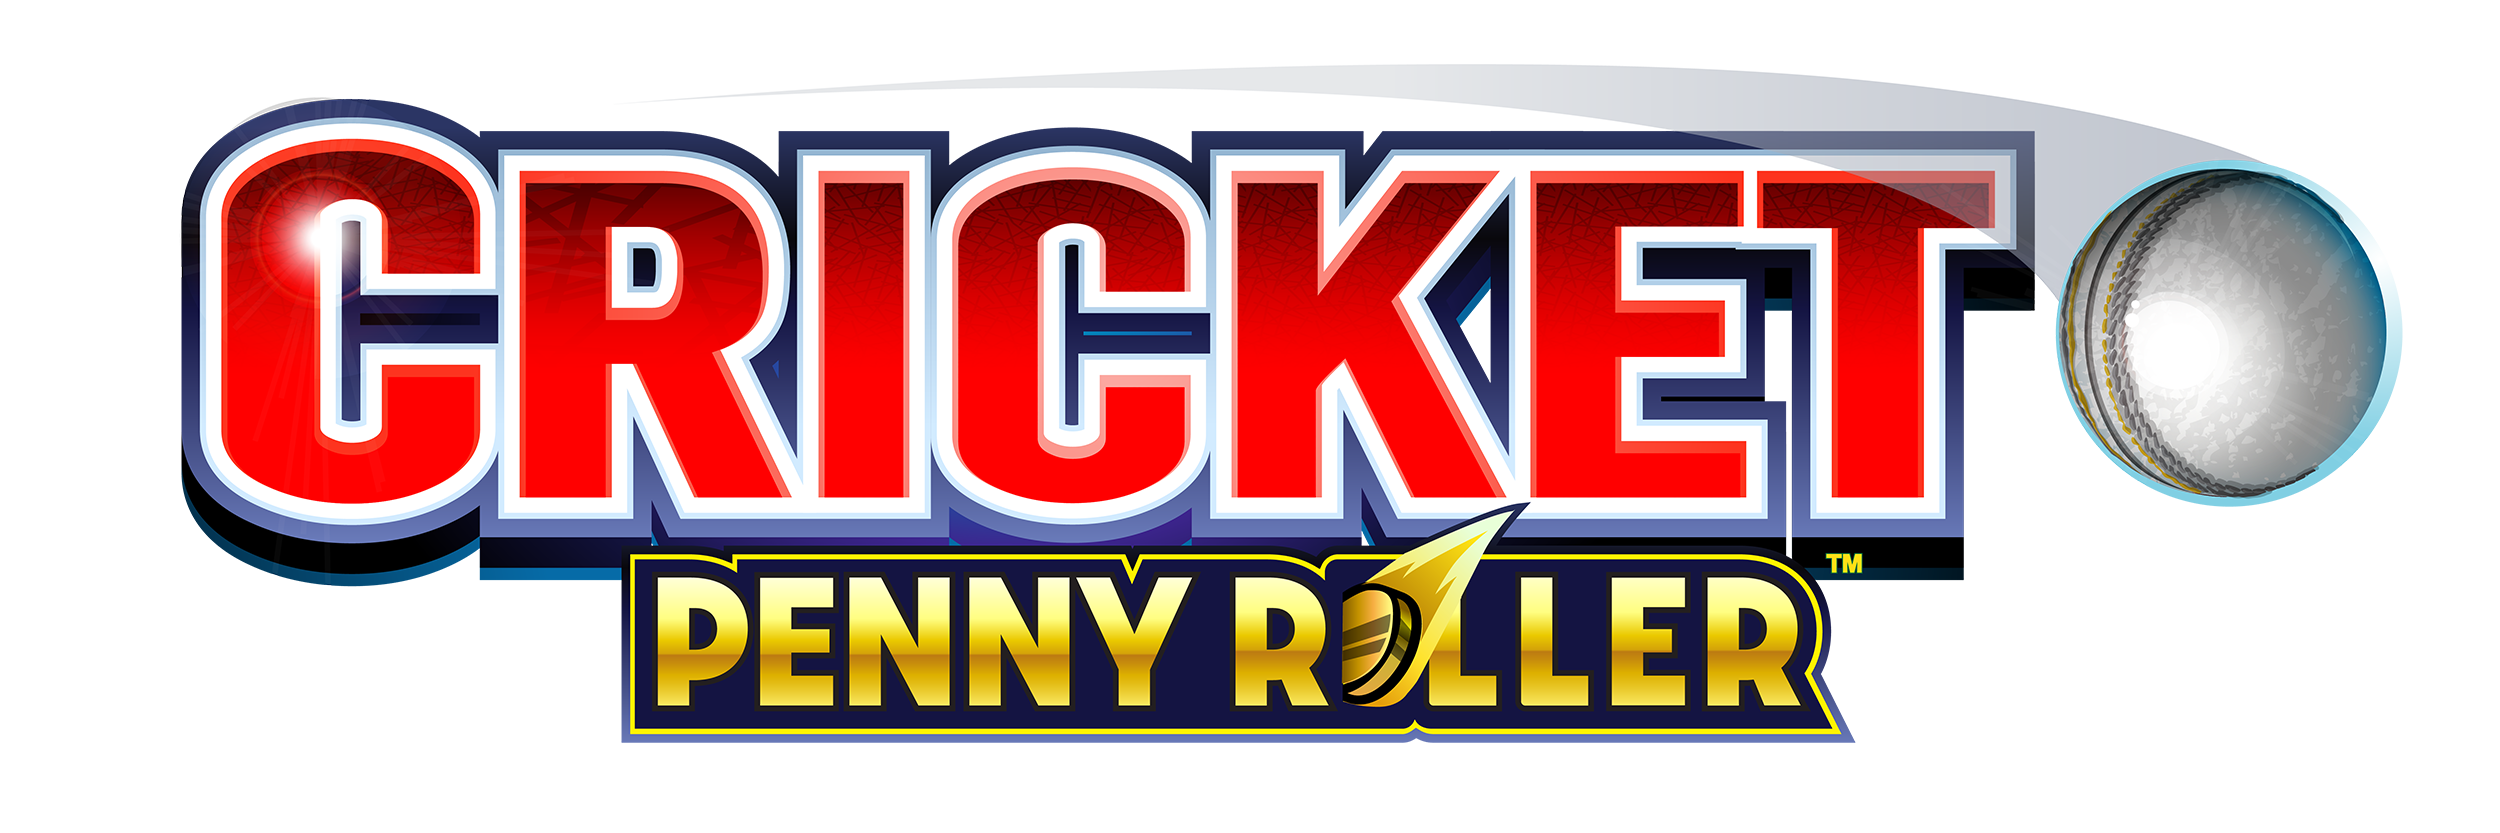 Cricket Penny Roller Slot logo